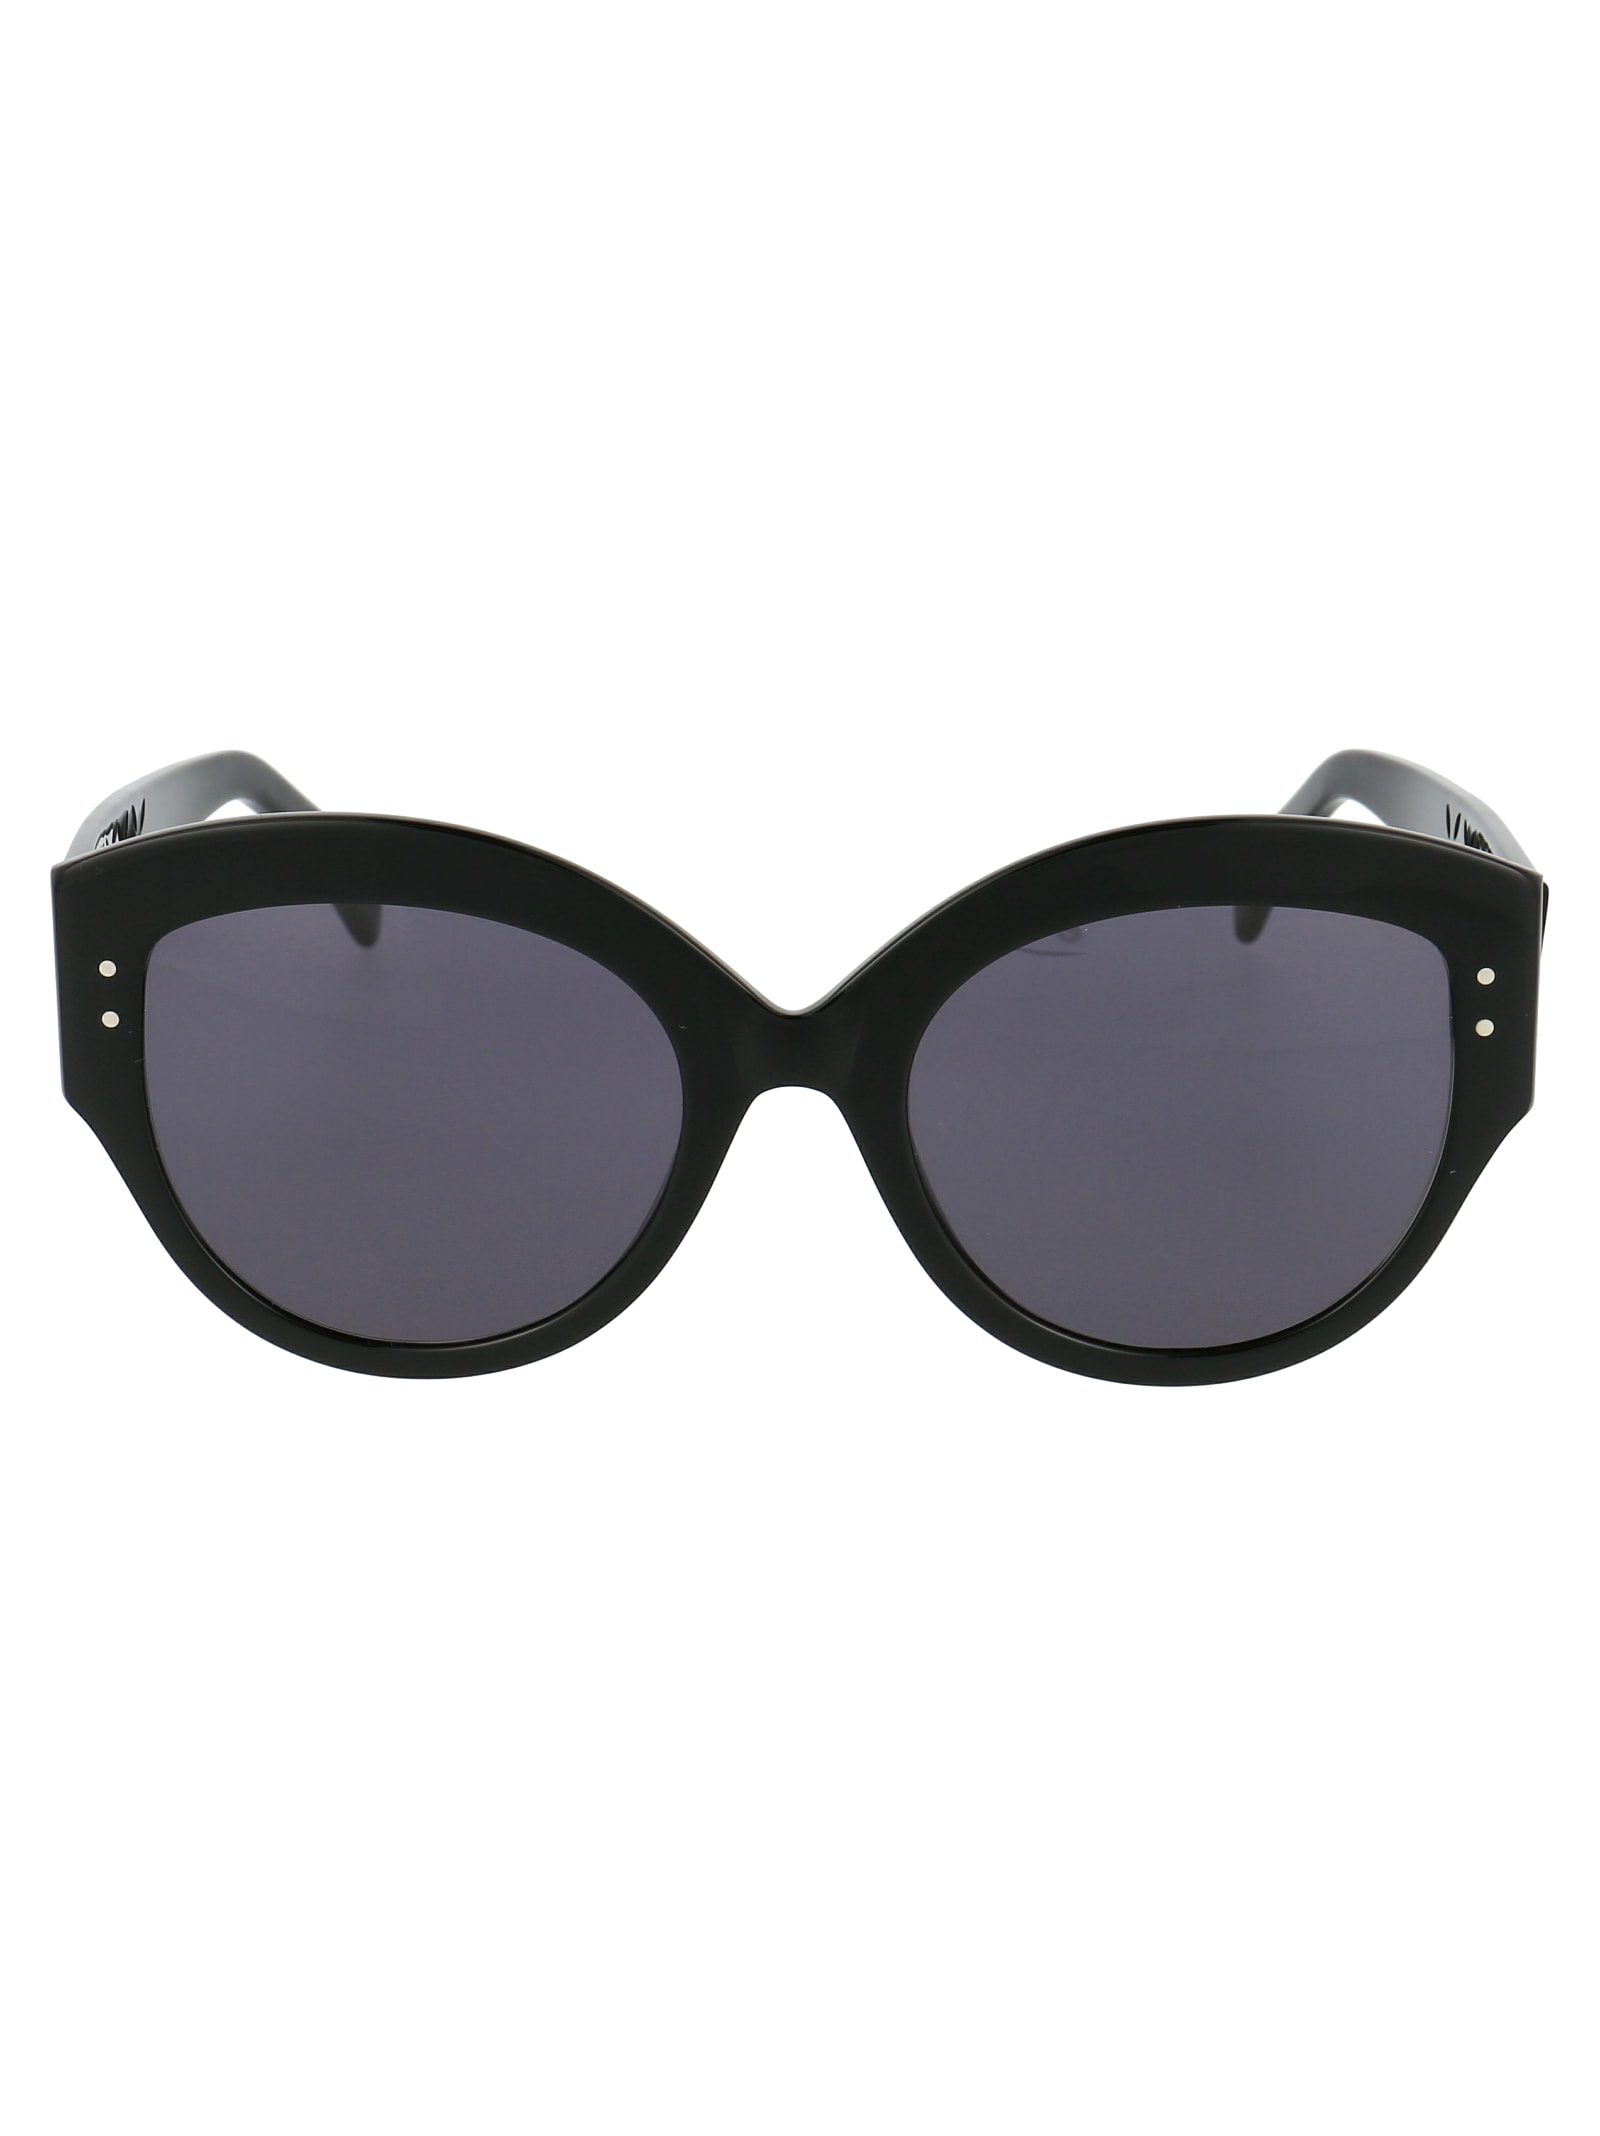 Alaïa Sunglasses In Black Black Grey